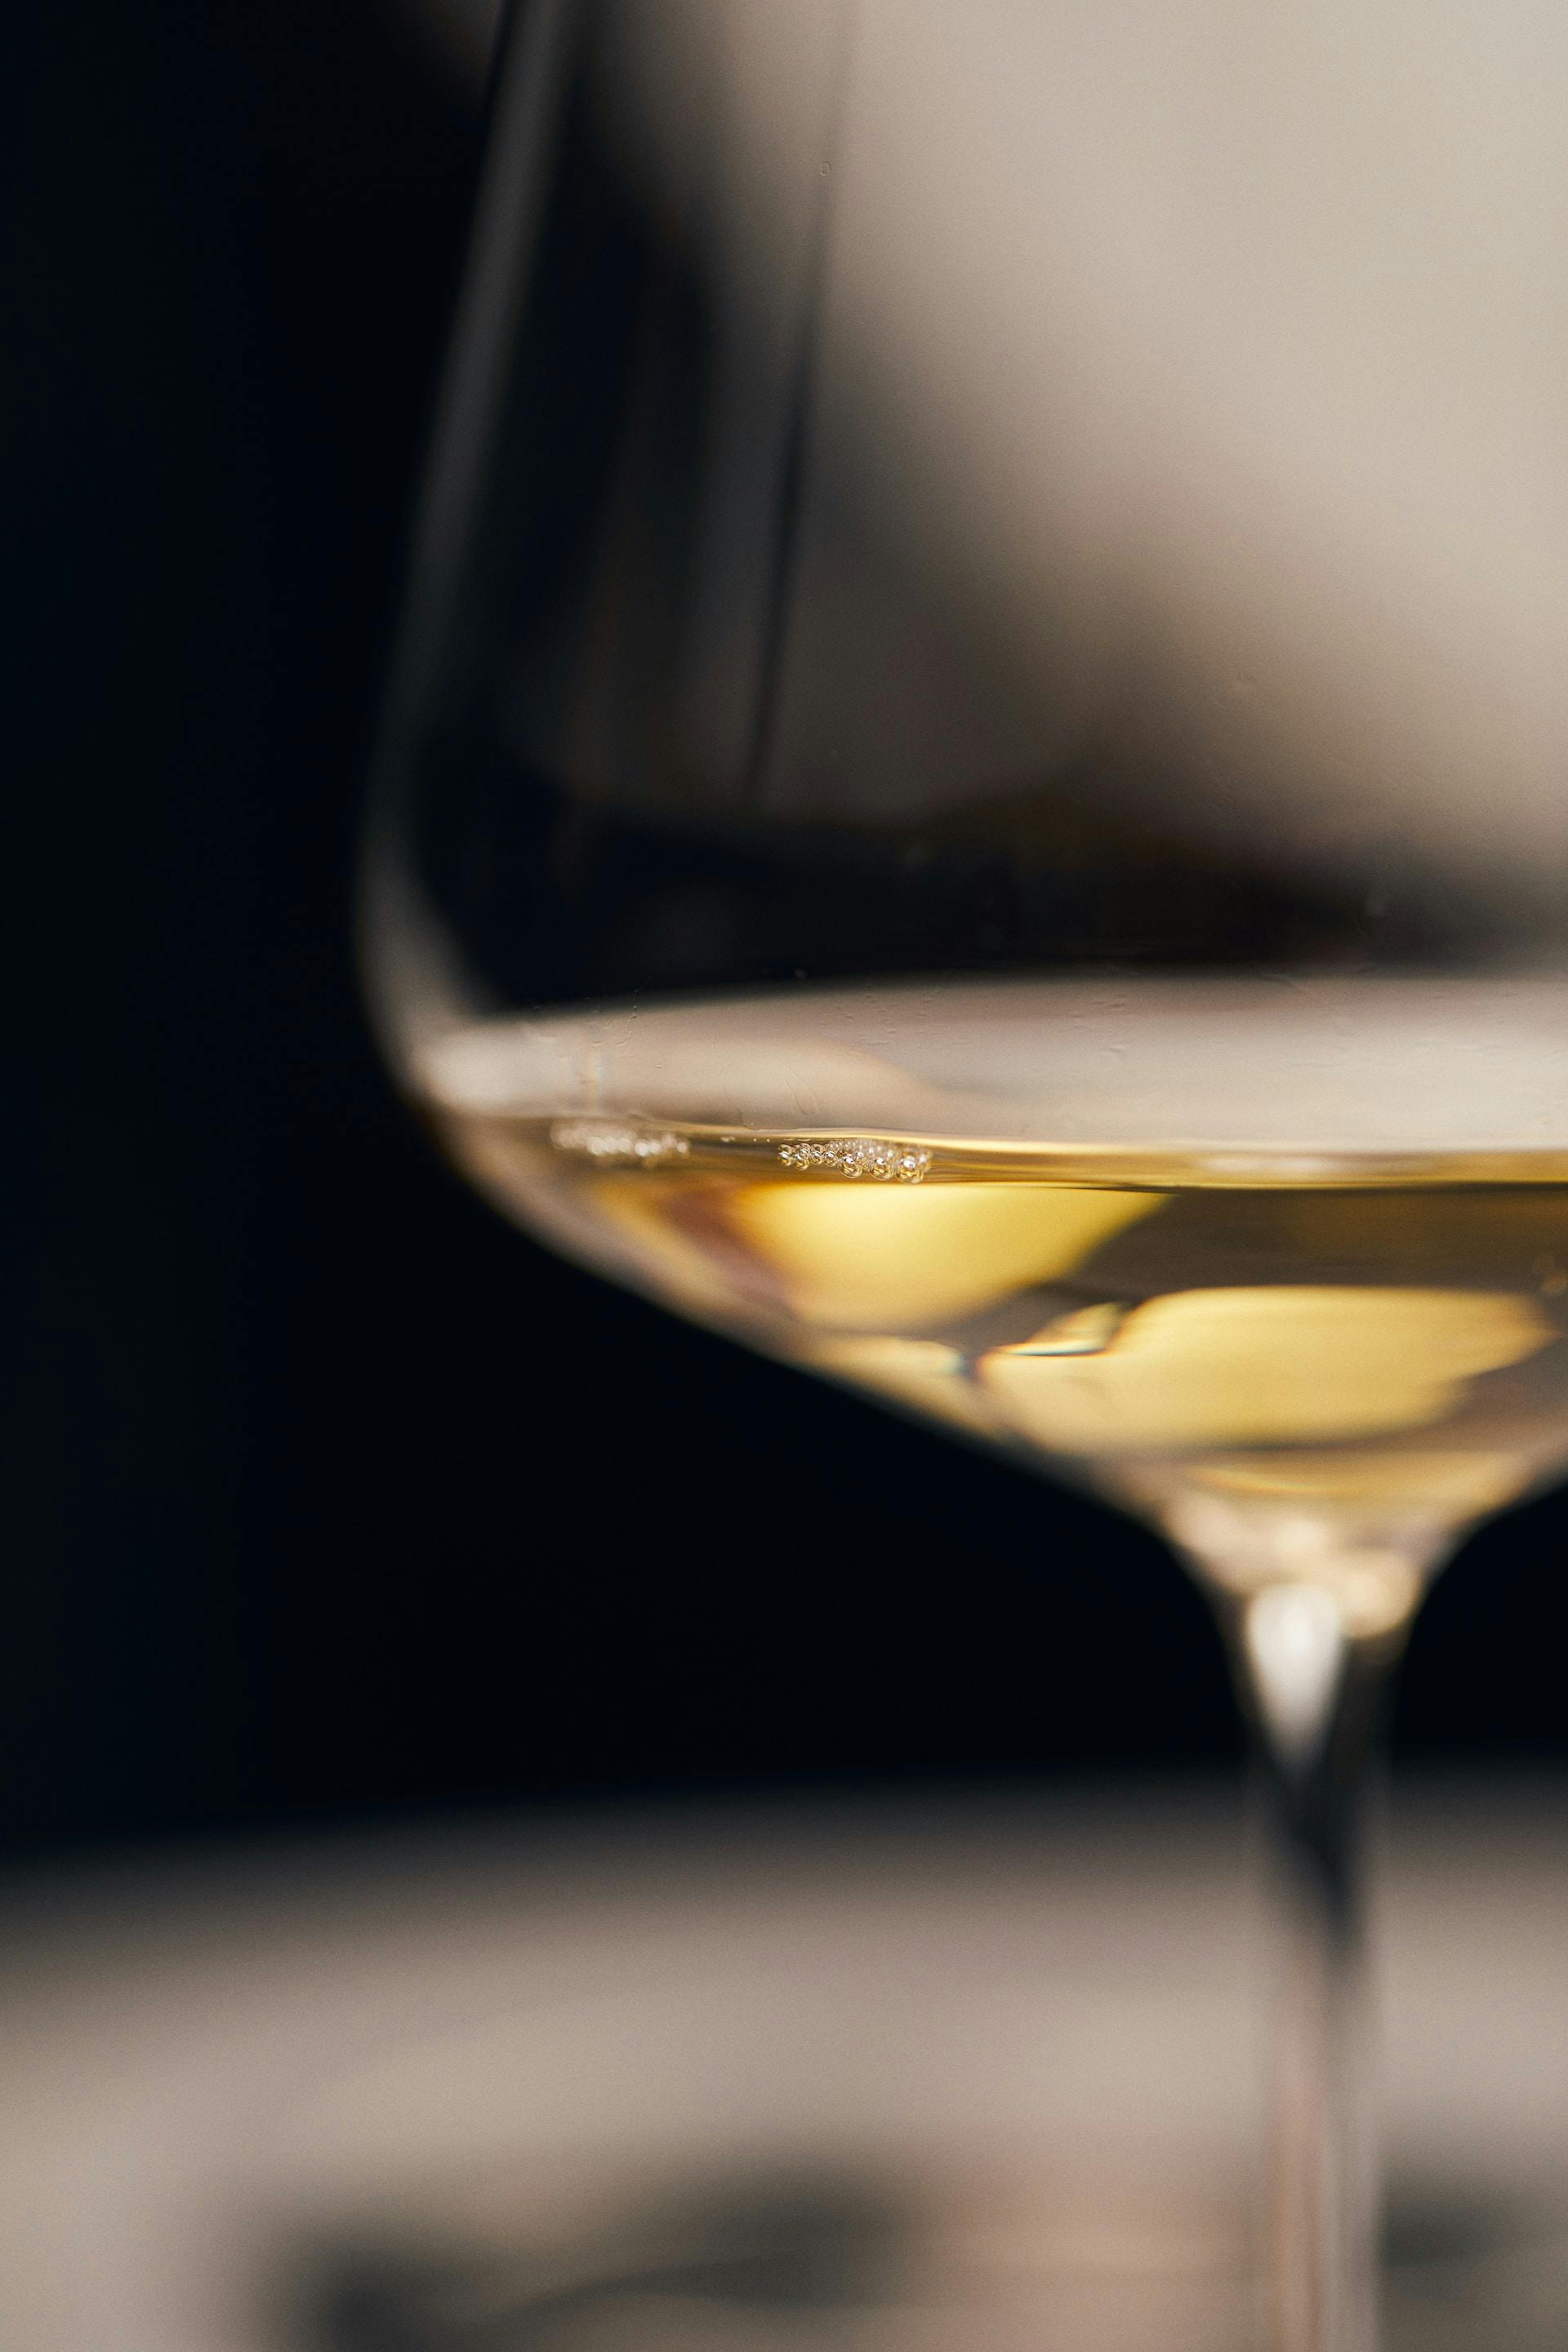 Nahaufnahme Weißweinglas mit gelblicher Flüssigkeit drin